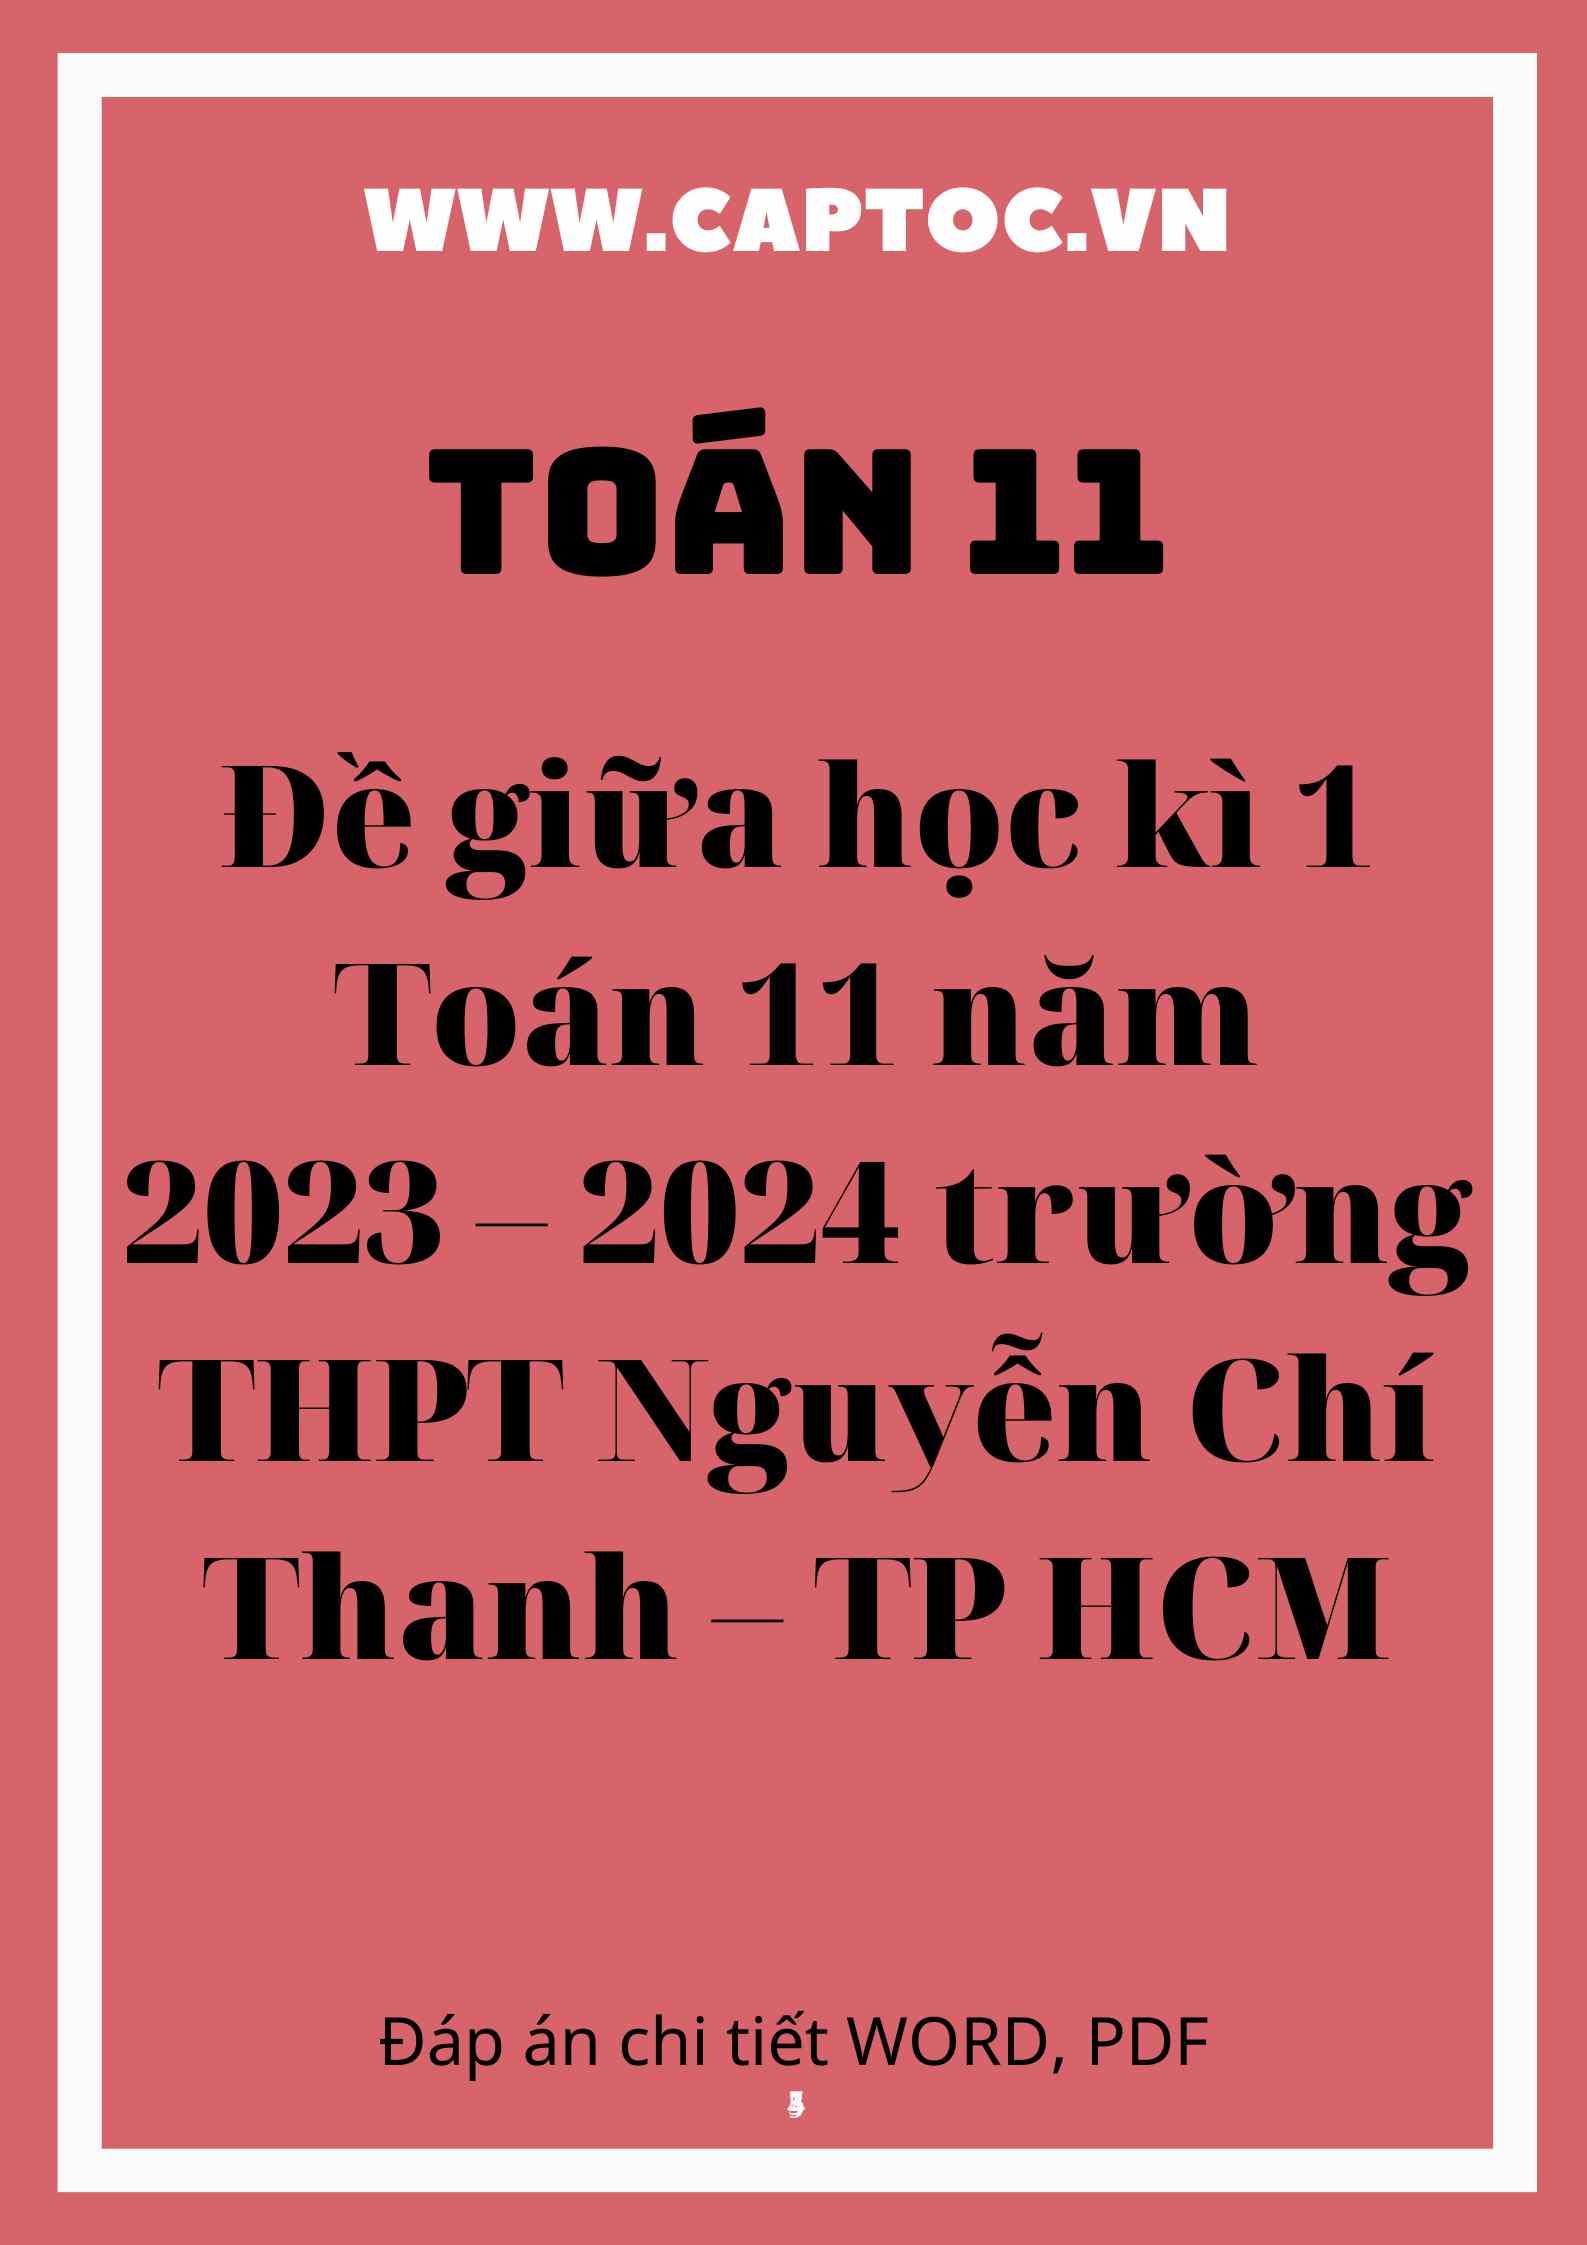 Đề giữa học kì 1 Toán 11 năm 2023 – 2024 trường THPT Nguyễn Chí Thanh – TP HCM